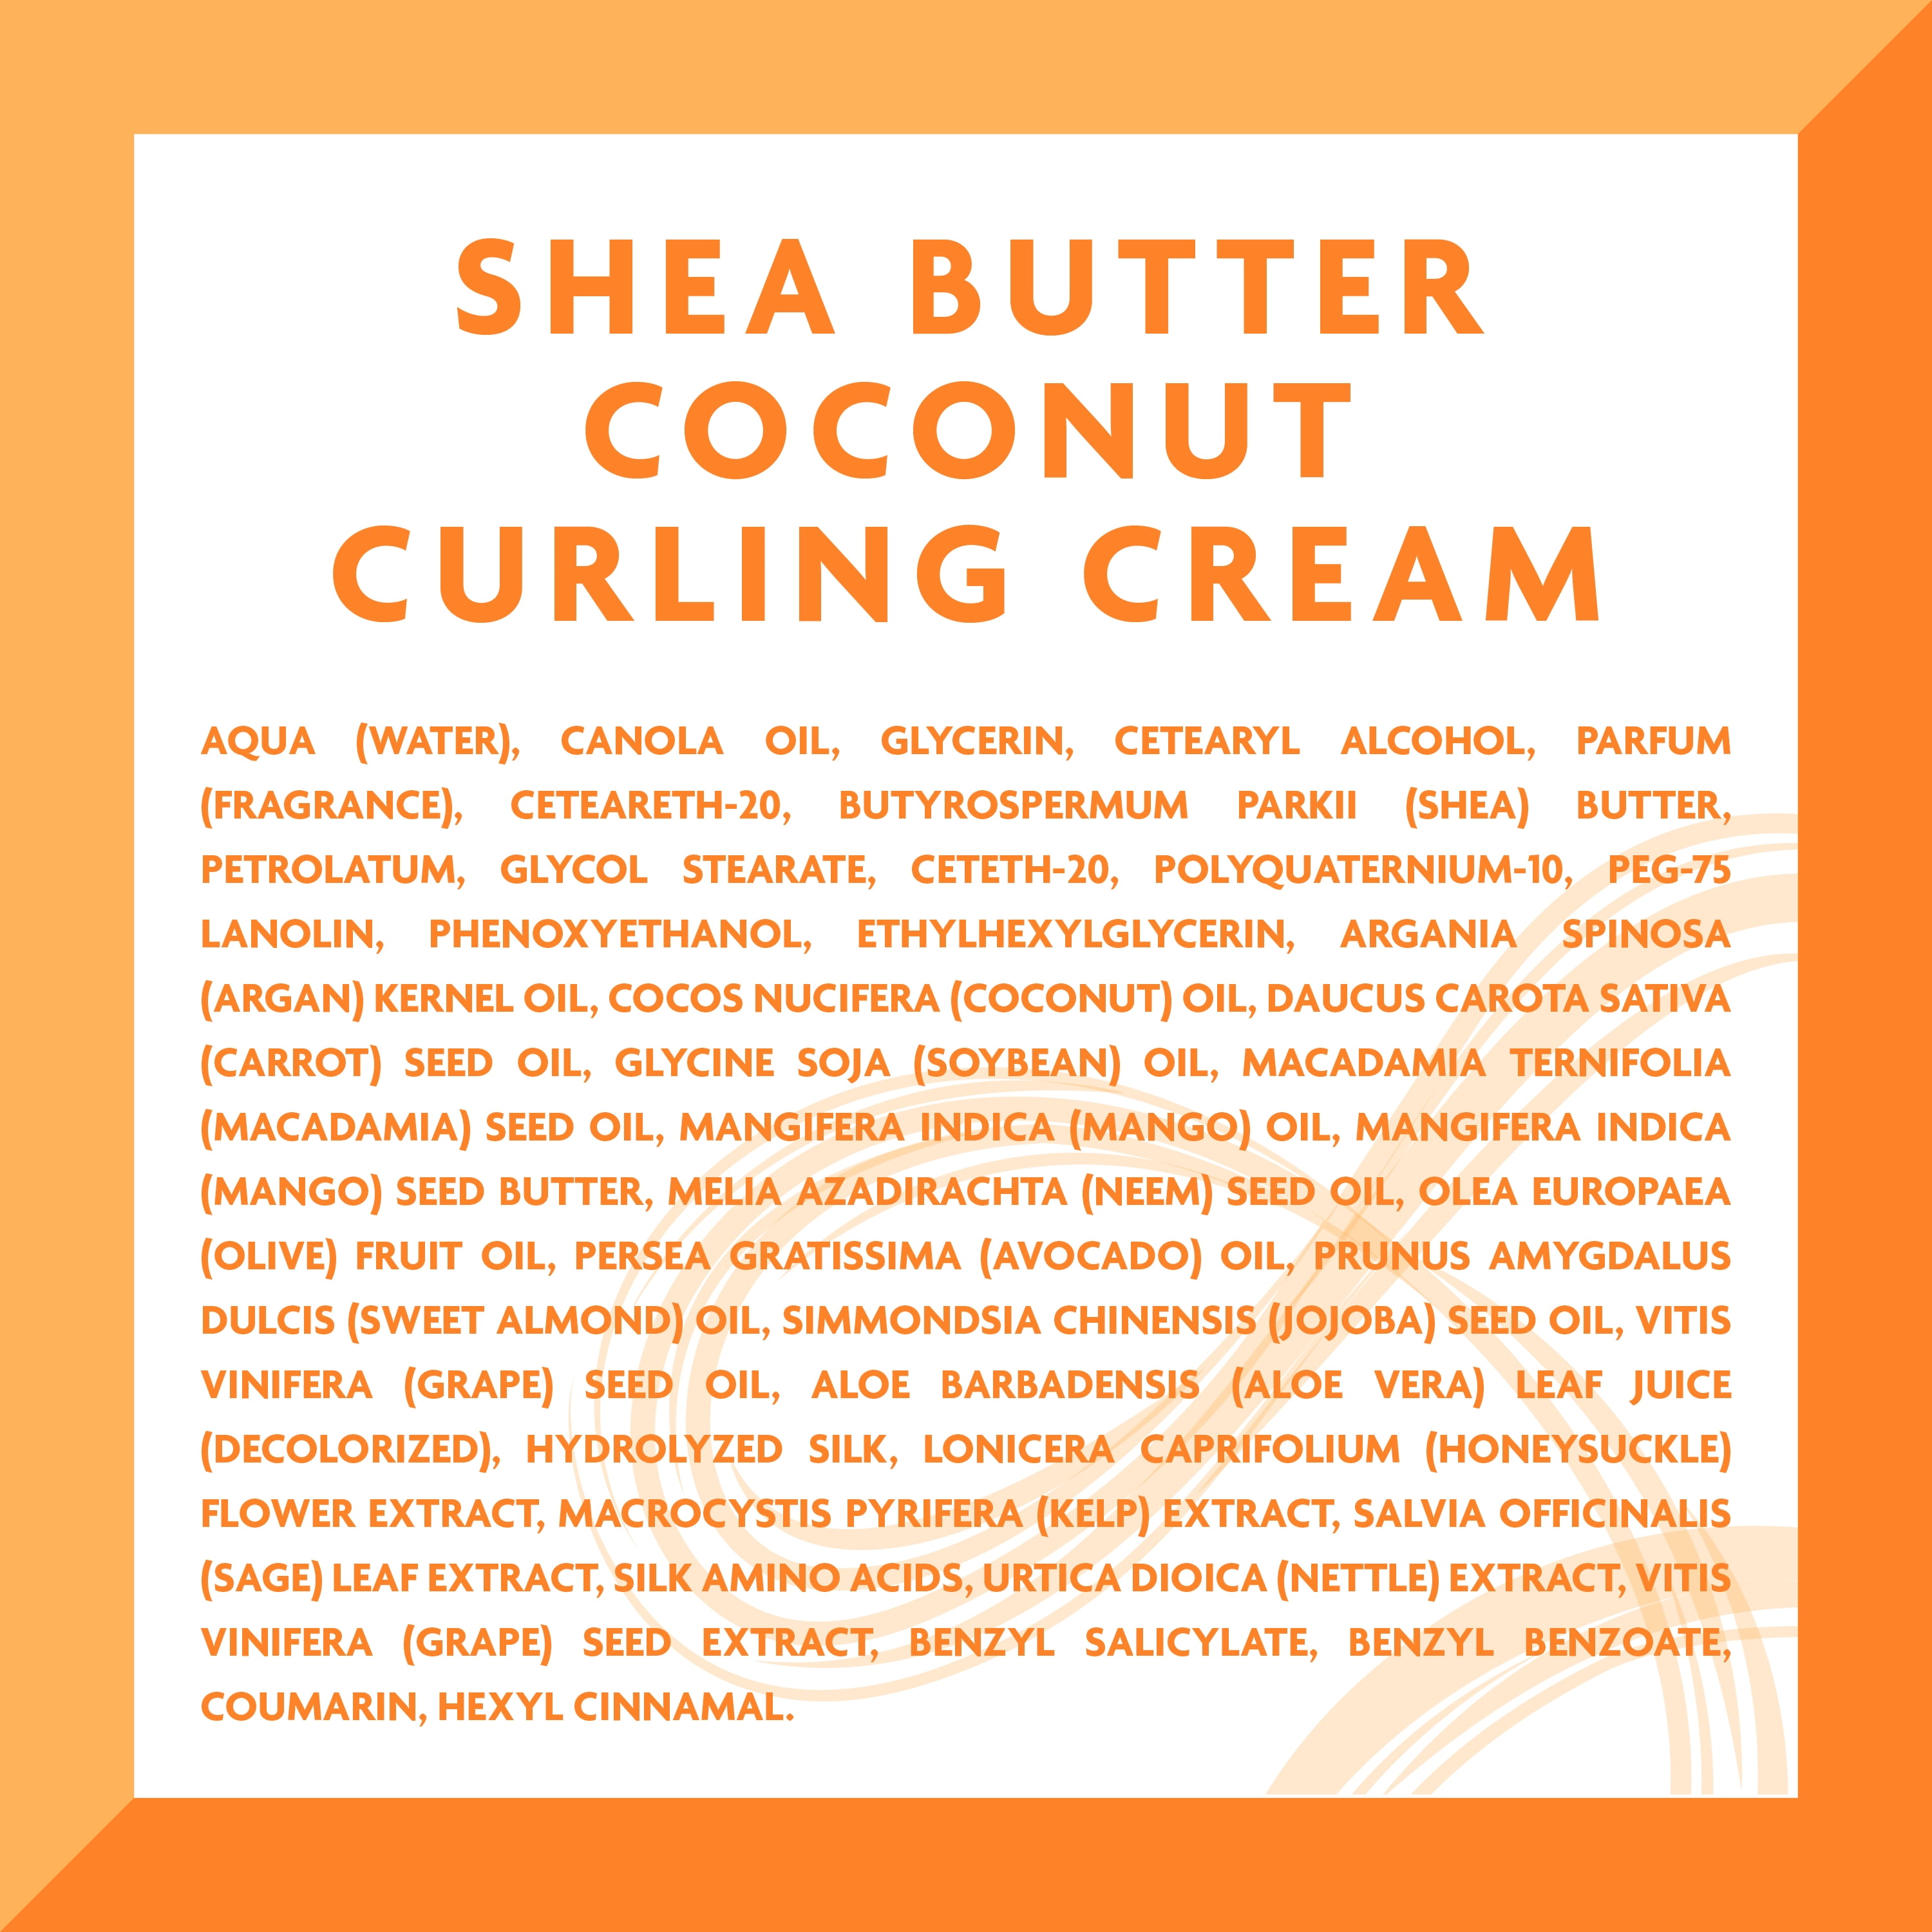 Soins Coconut Curling Cream CANTU